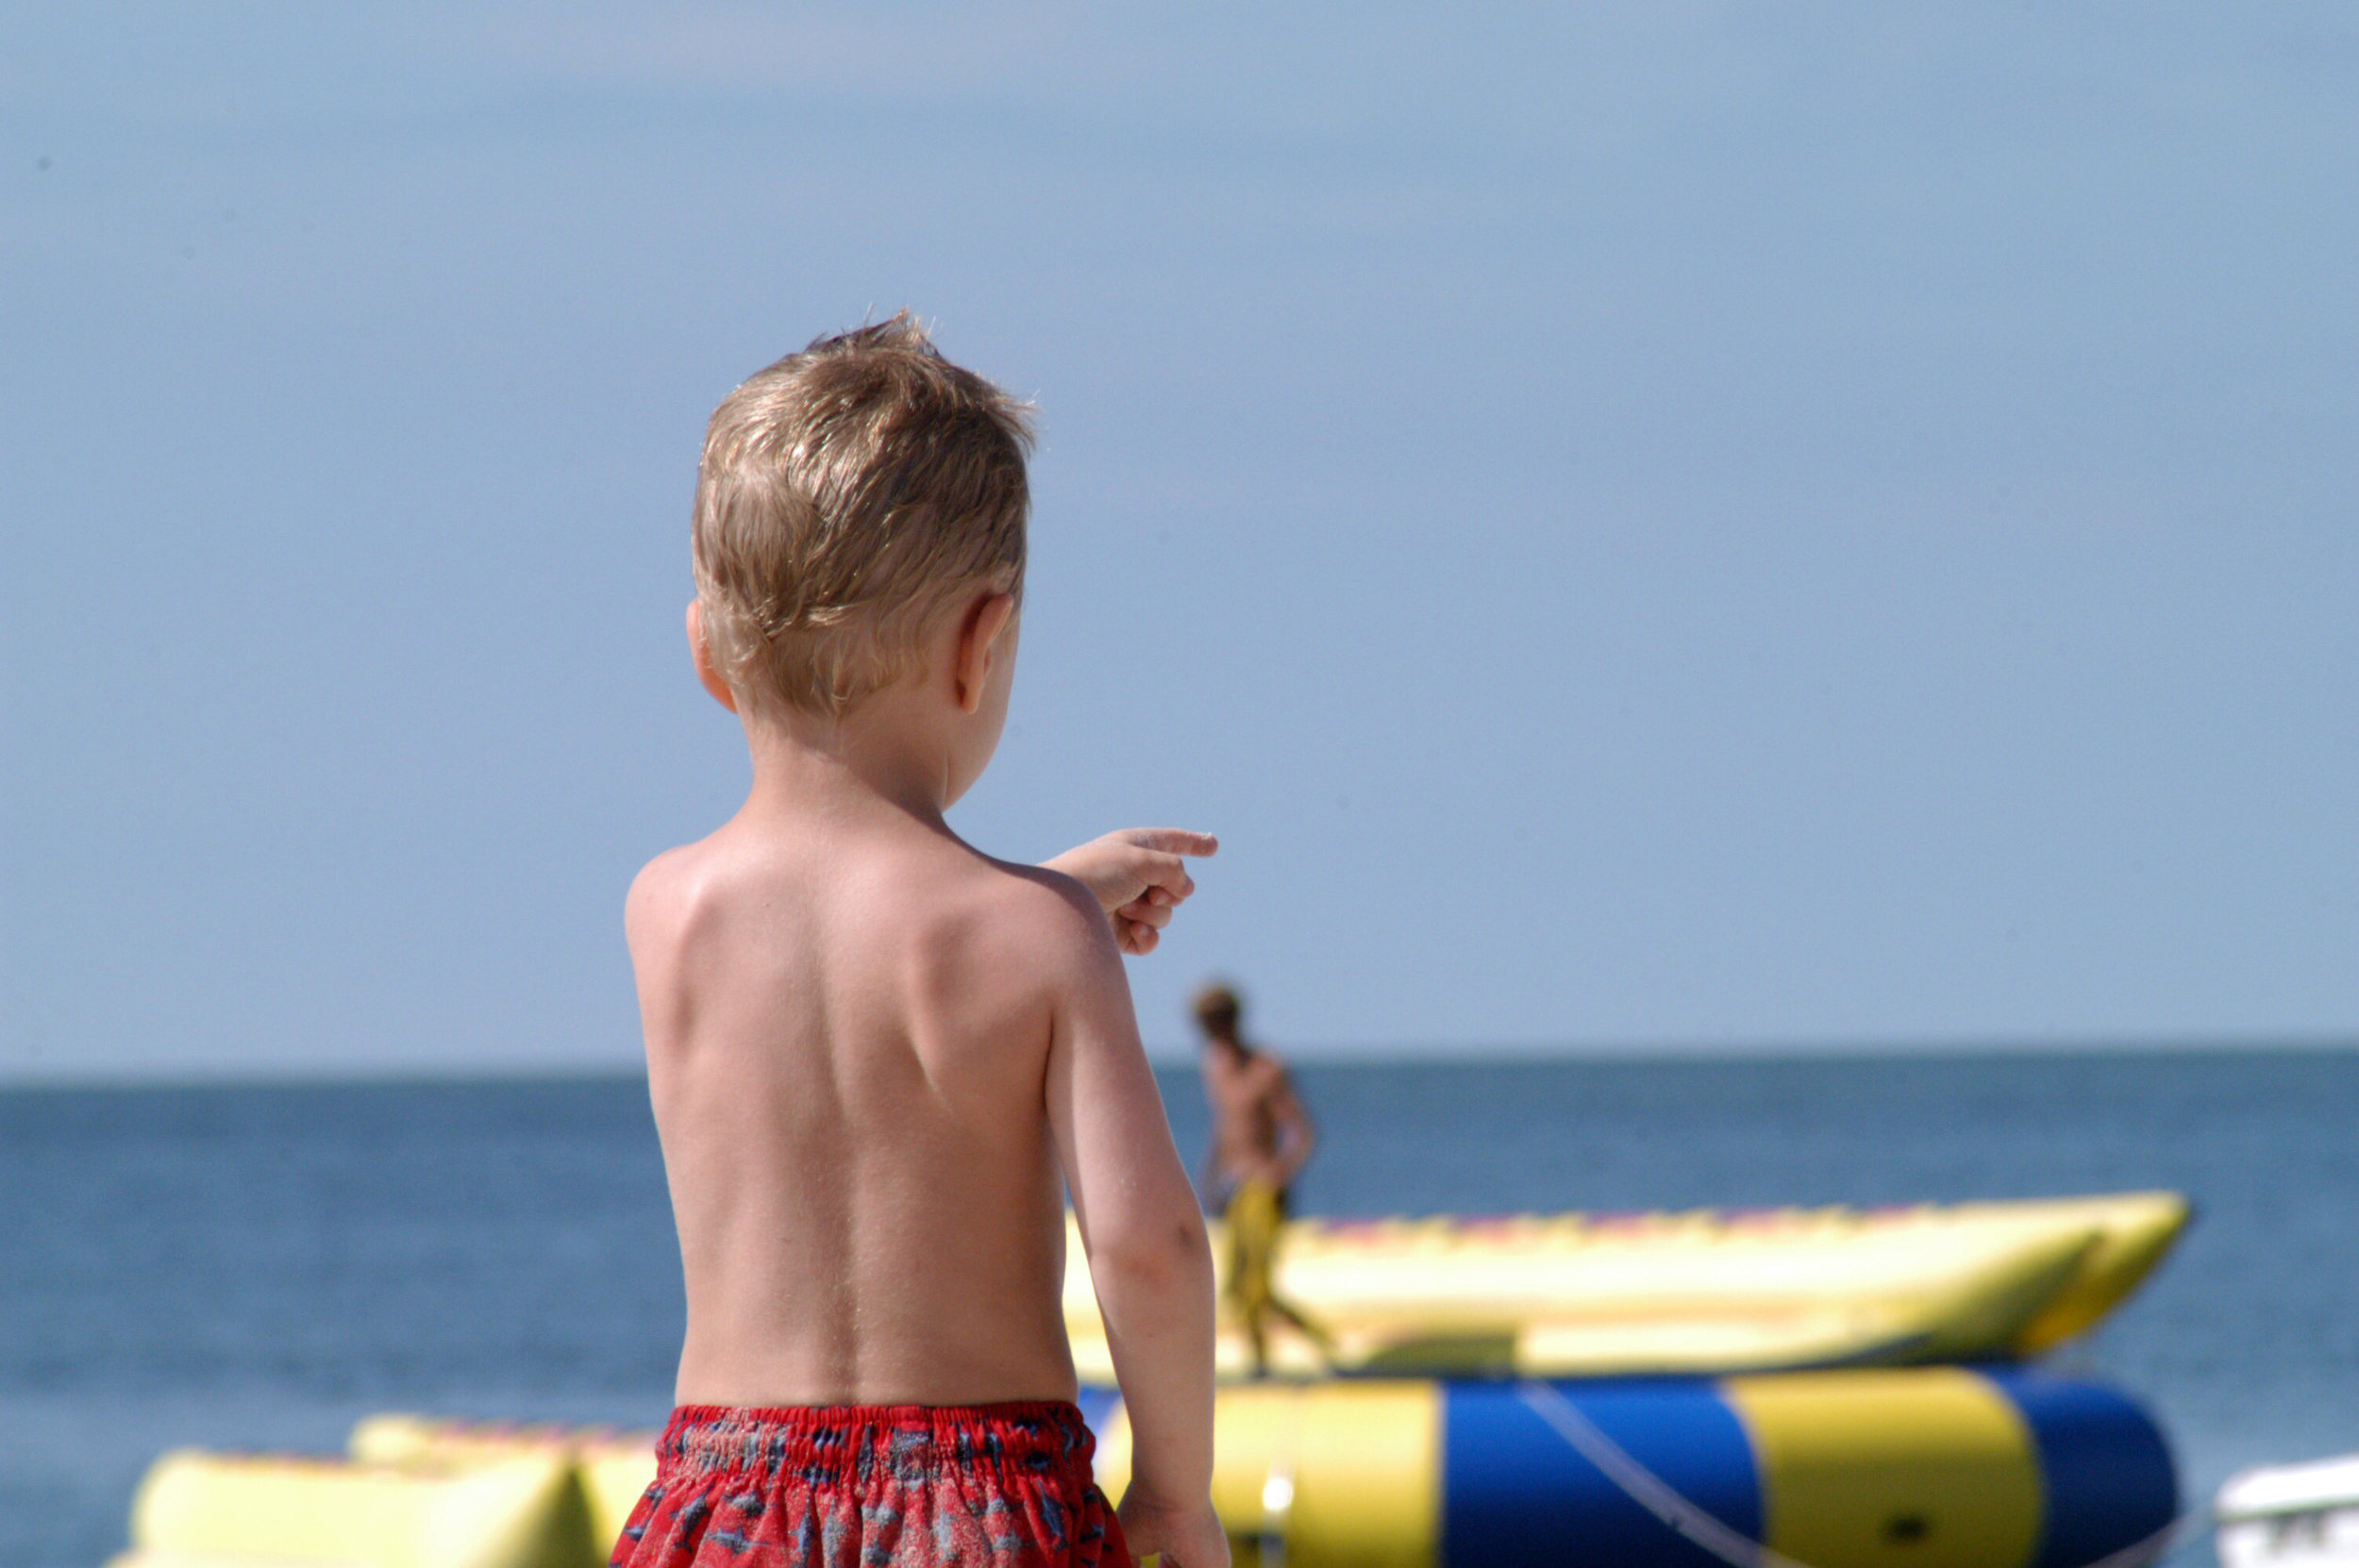 A pointing boy on the beach.jpg